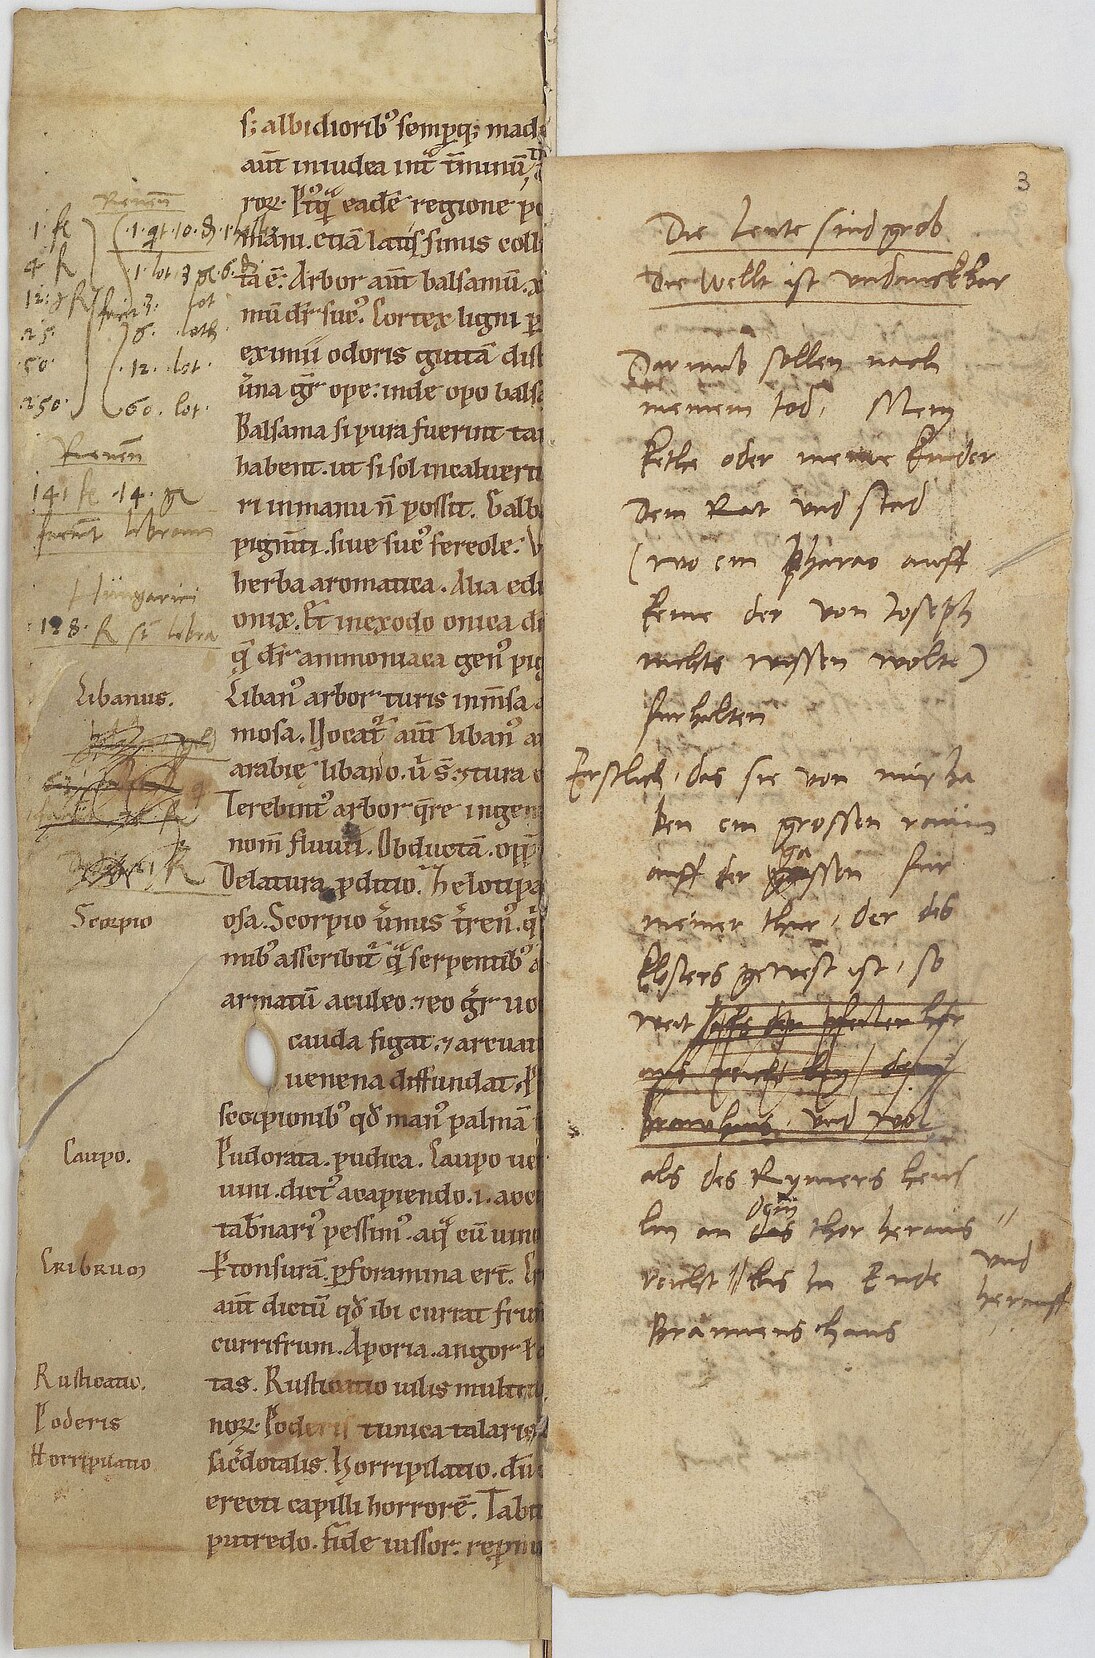 Martin Luthers eigenhändige „Hausrechnung“ mit Einträgen aus den Jahren 1535 bis 1542